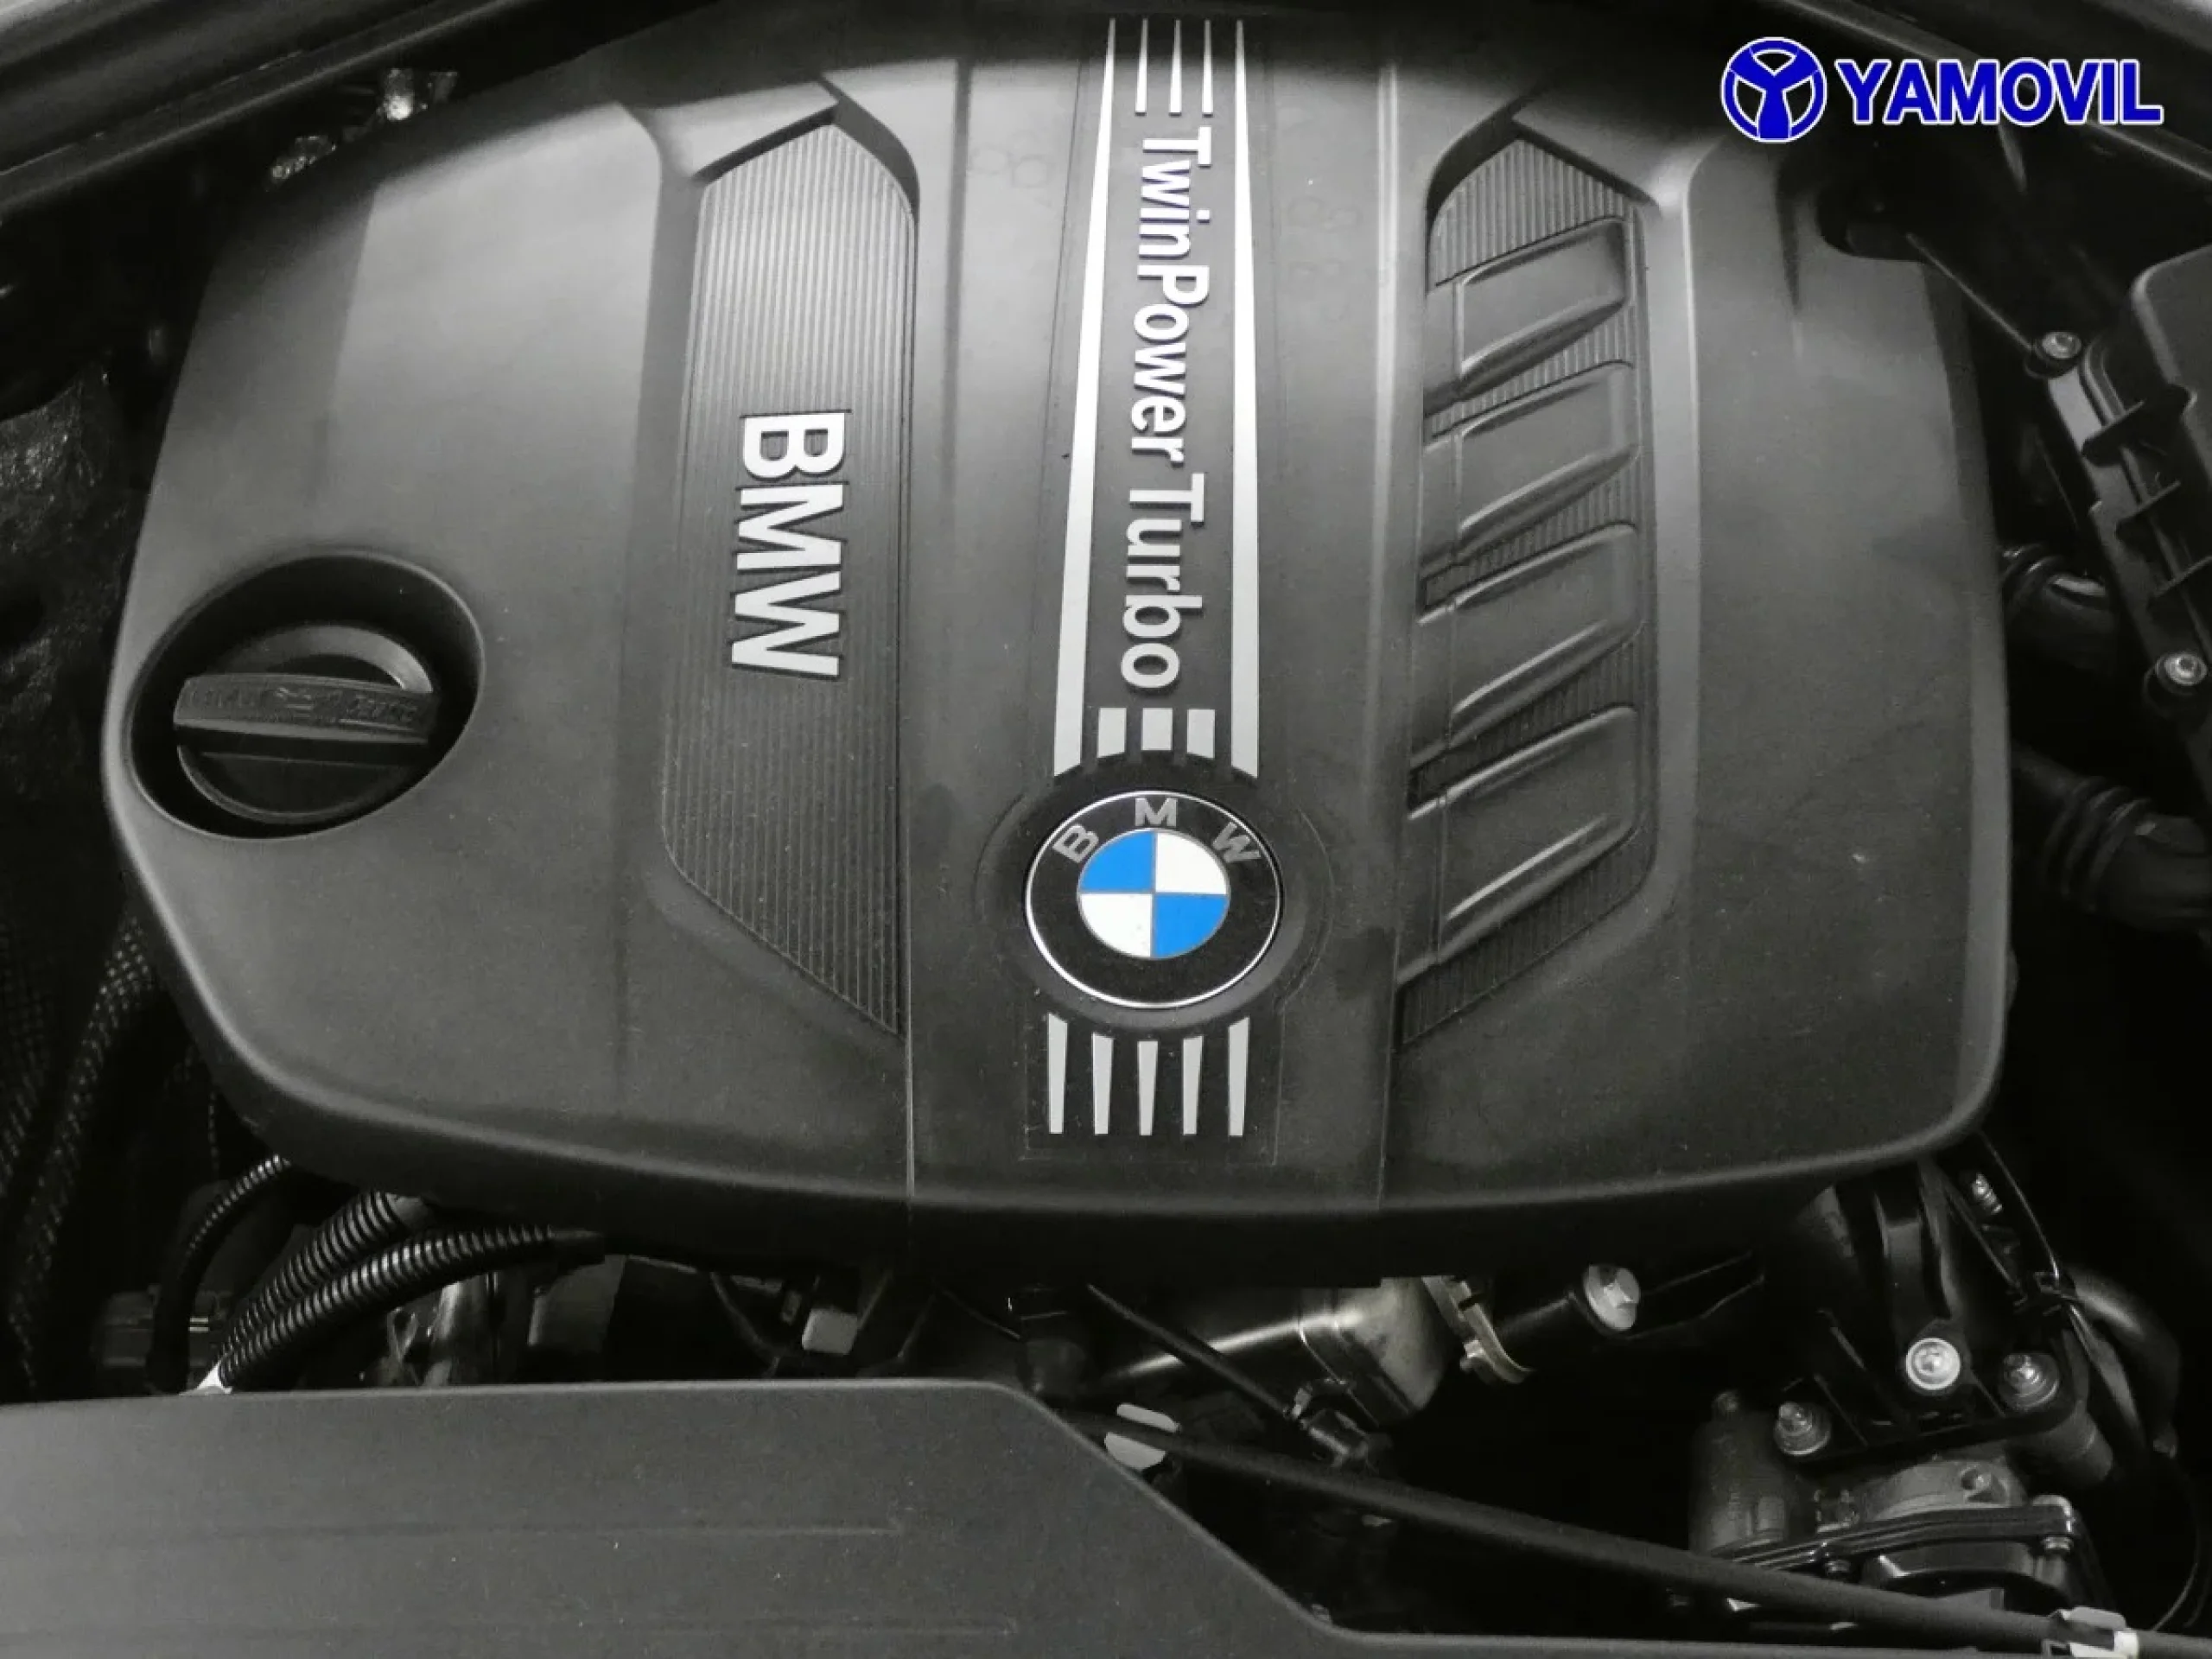 BMW Serie 1 118d 105 kW (143 CV) - Foto 8